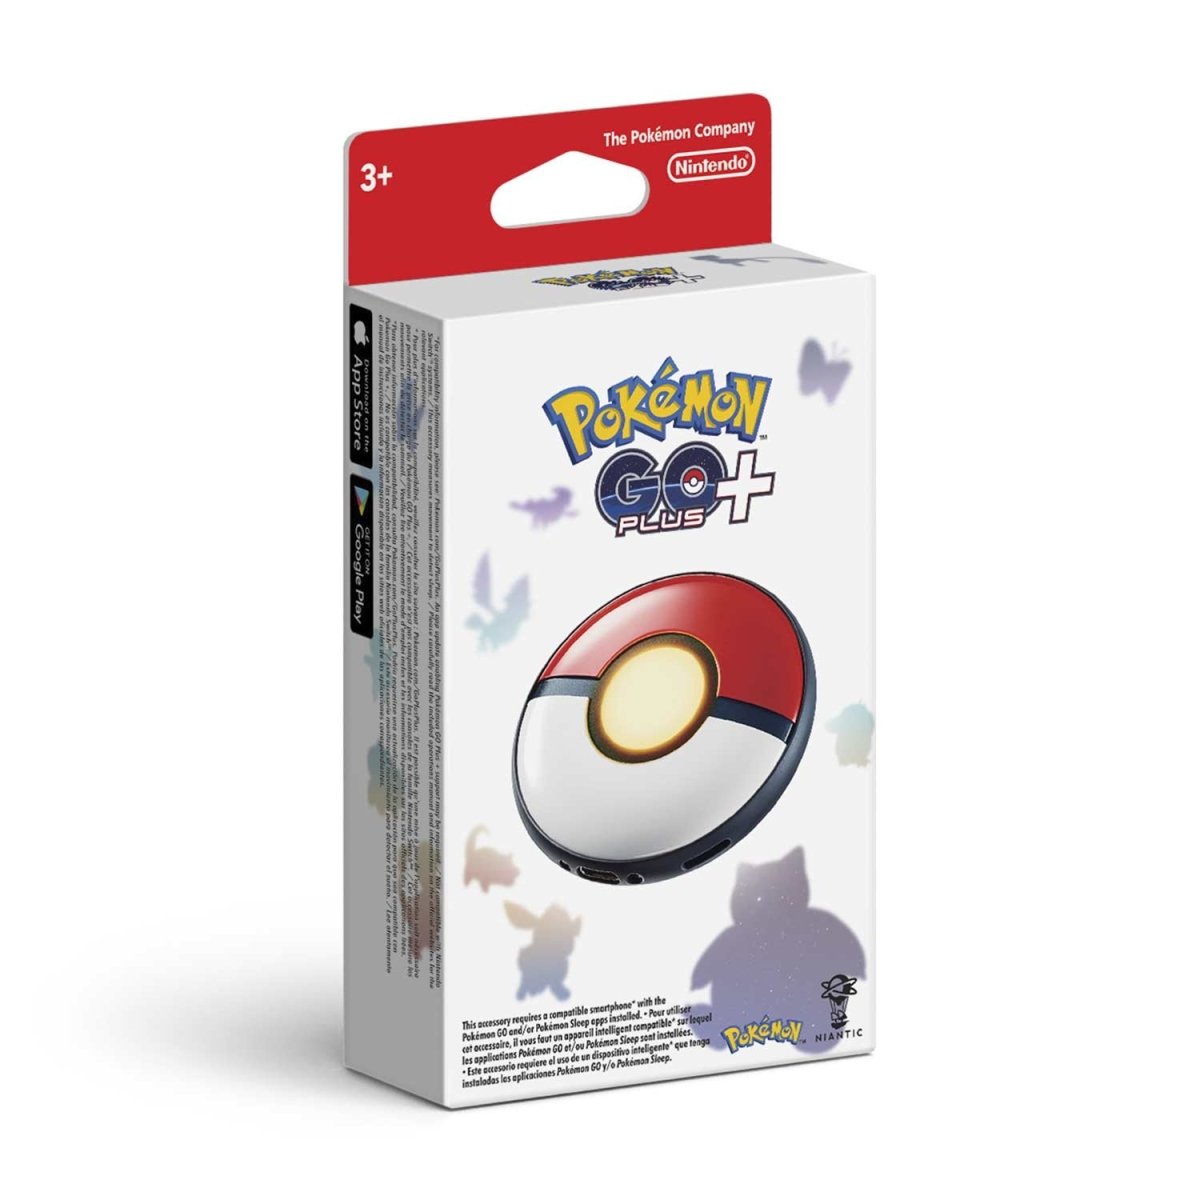 Pokémon GO Plus + | Pokémon Center Official Site